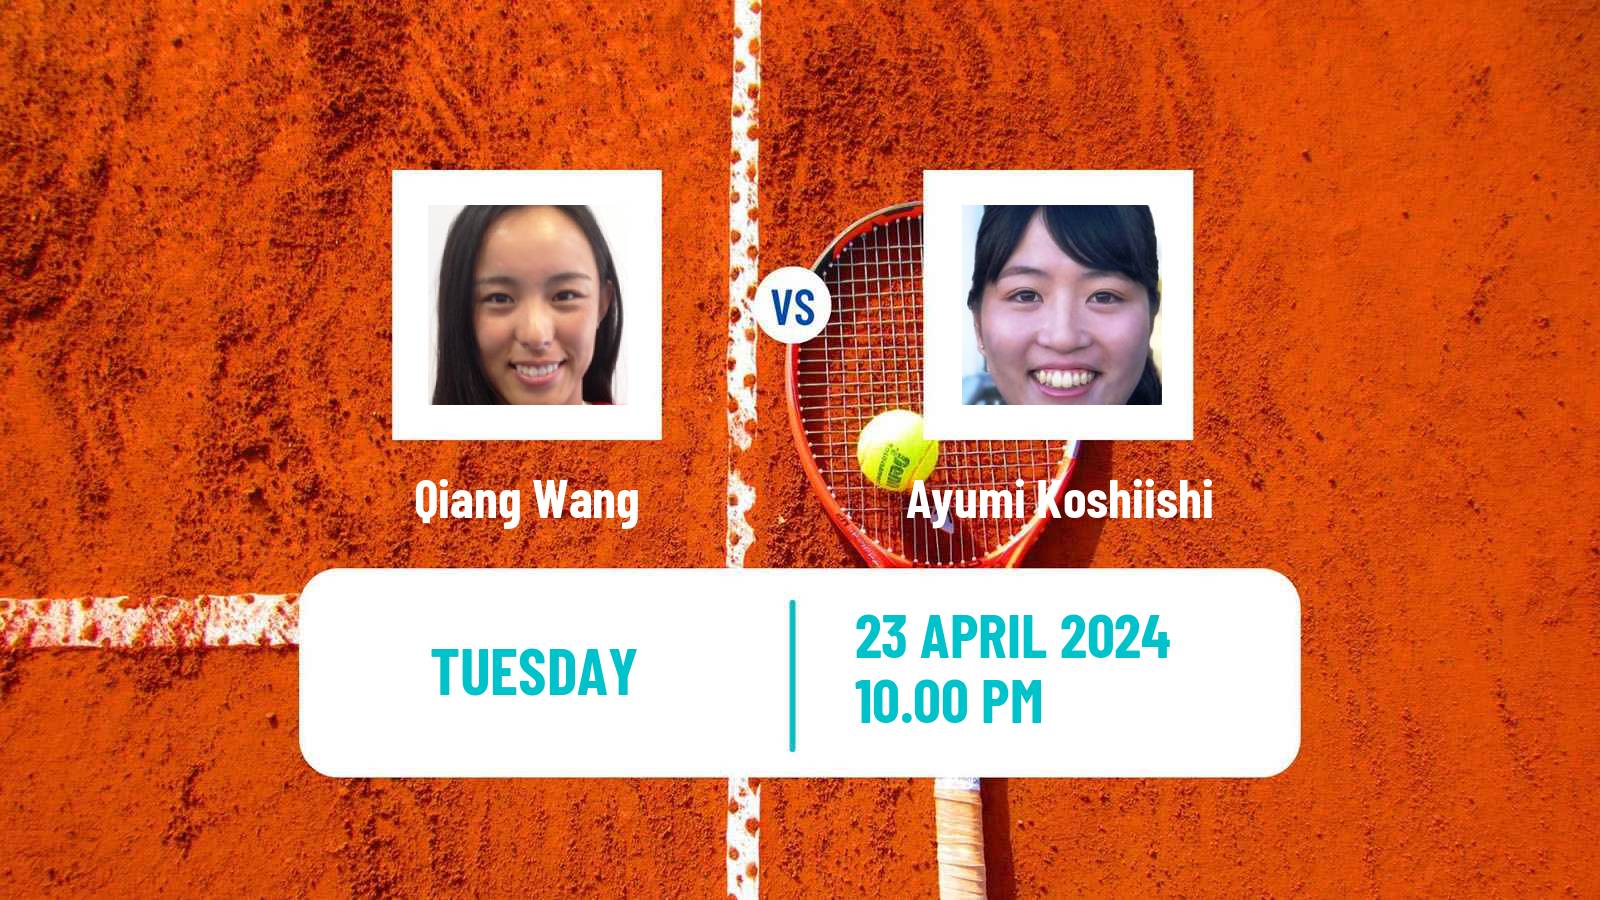 Tennis ITF W50 Wuning Women Qiang Wang - Ayumi Koshiishi